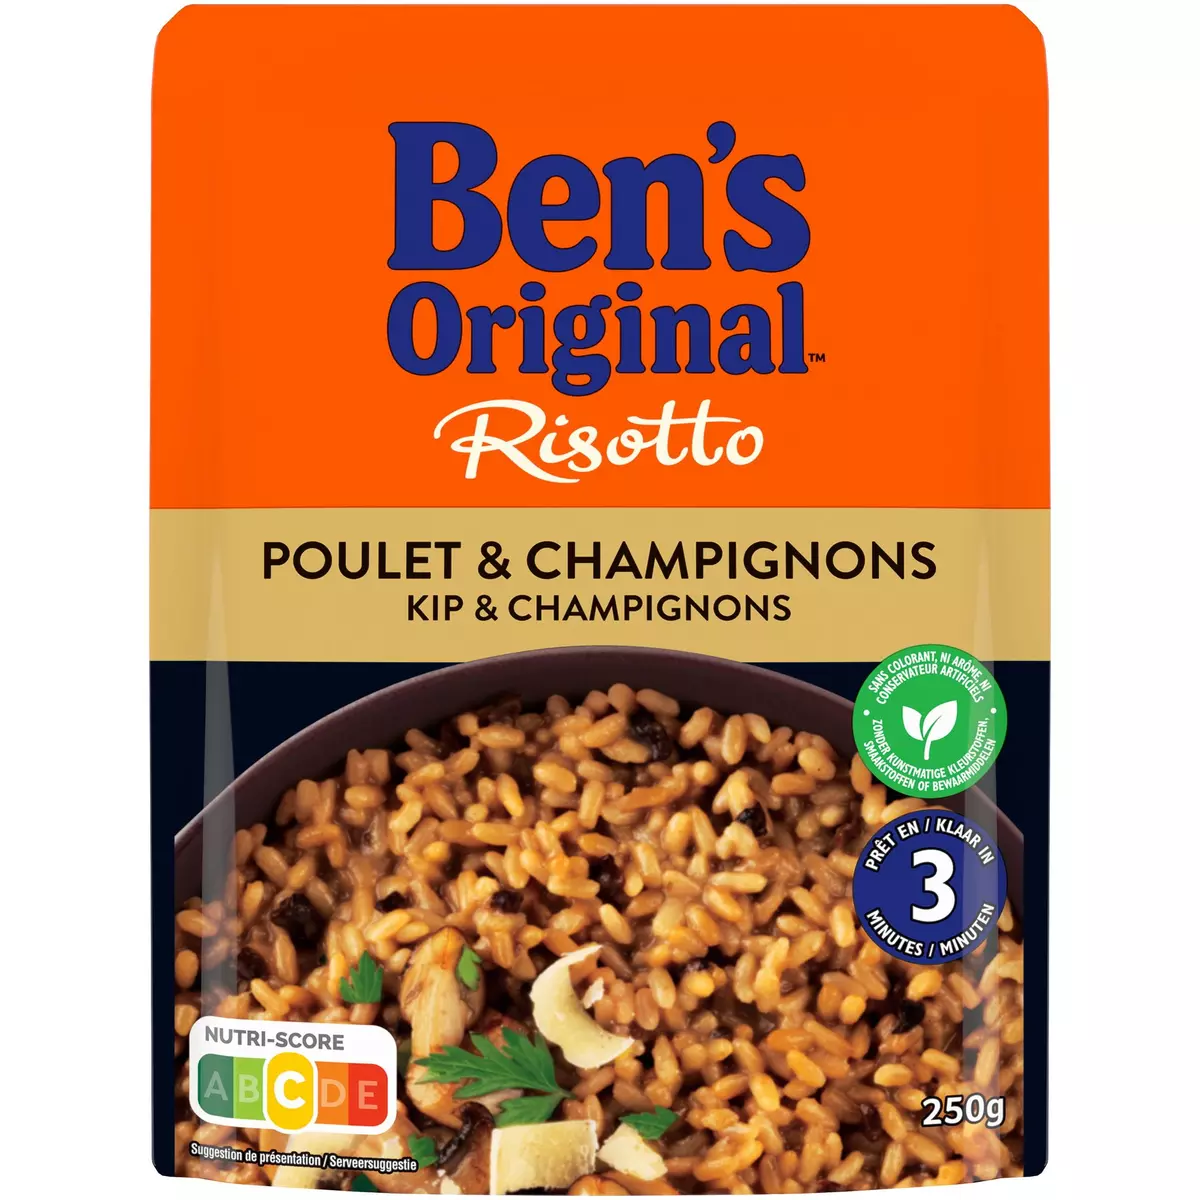 BEN'S ORIGINAL Risotto poulet champignons sachet express 1 personne 250g